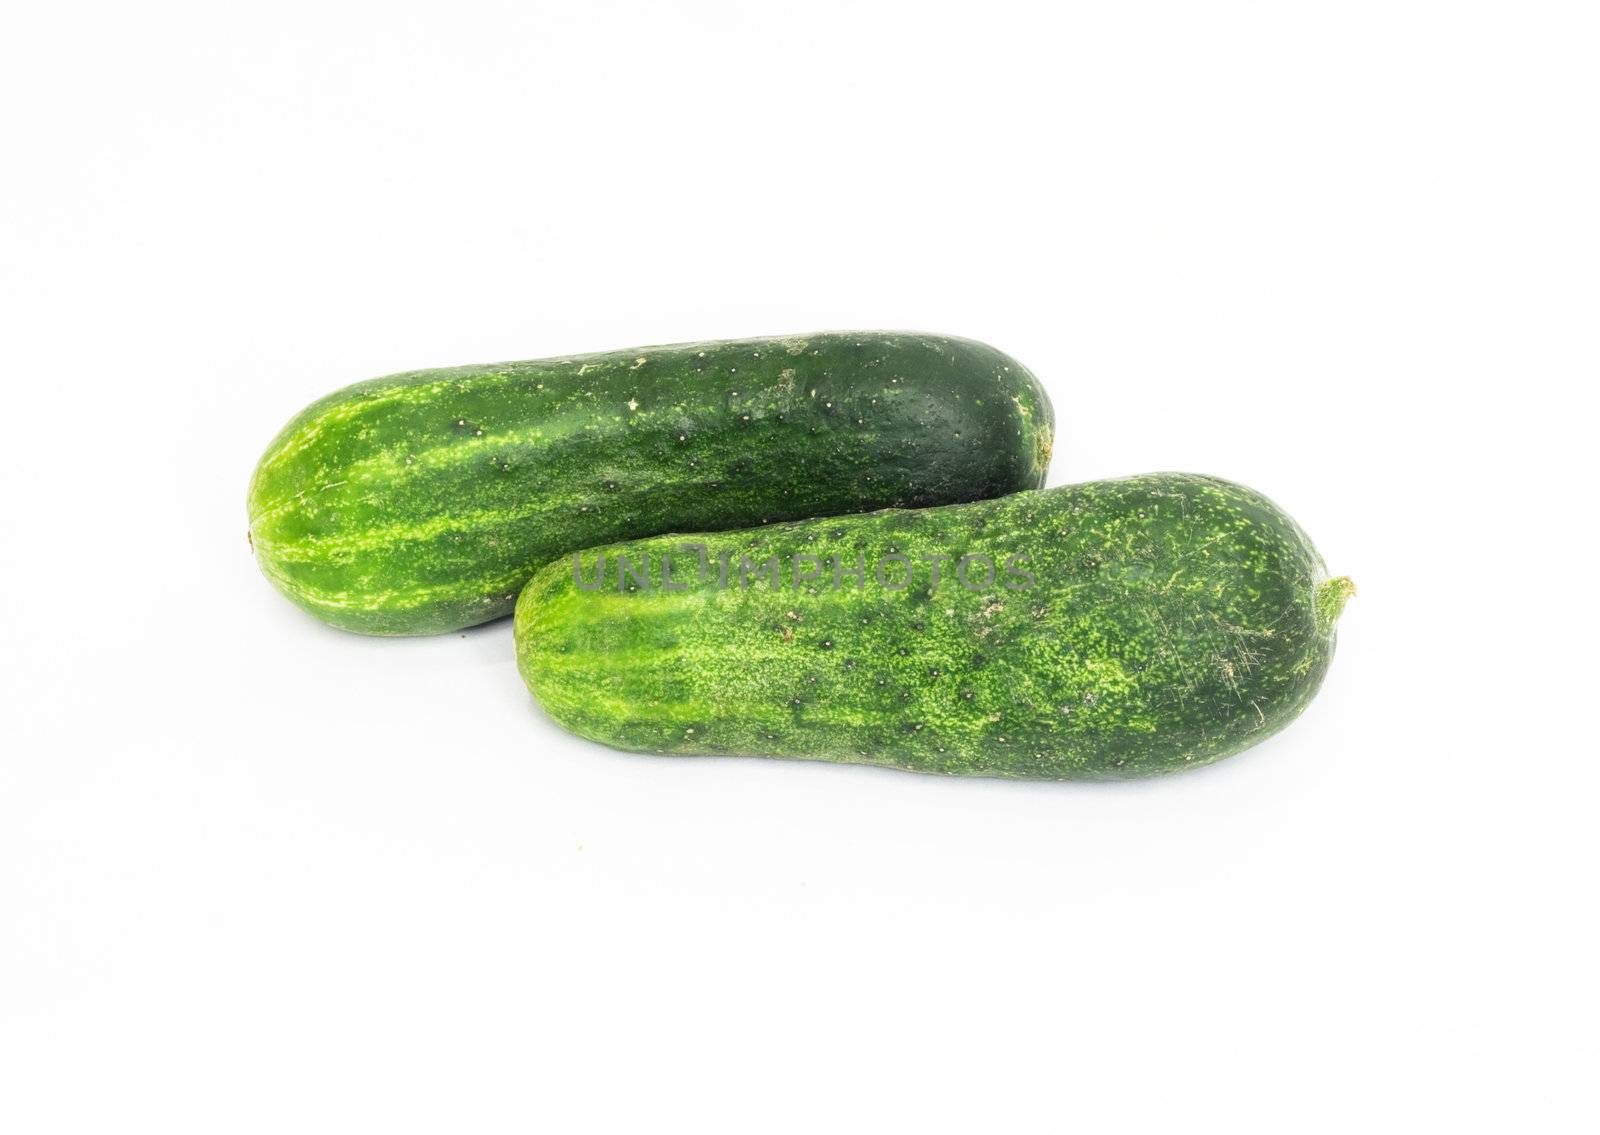 Two cucumbers  by schankz